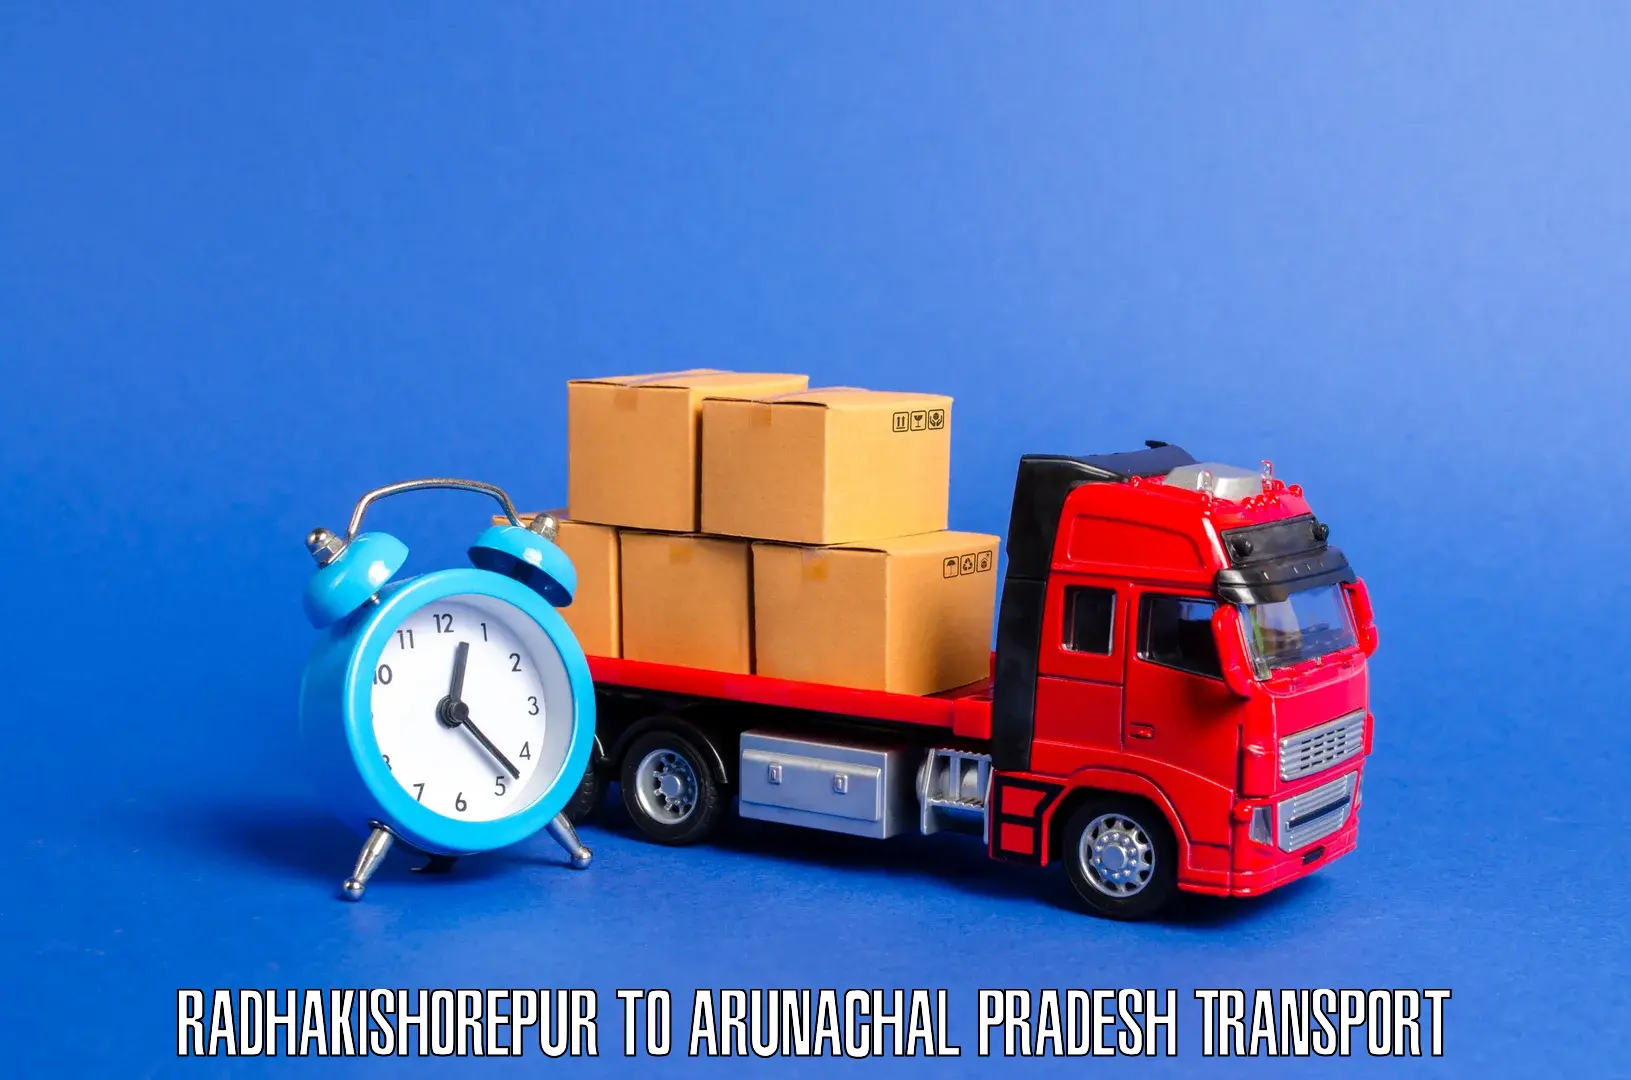 Land transport services Radhakishorepur to Basar